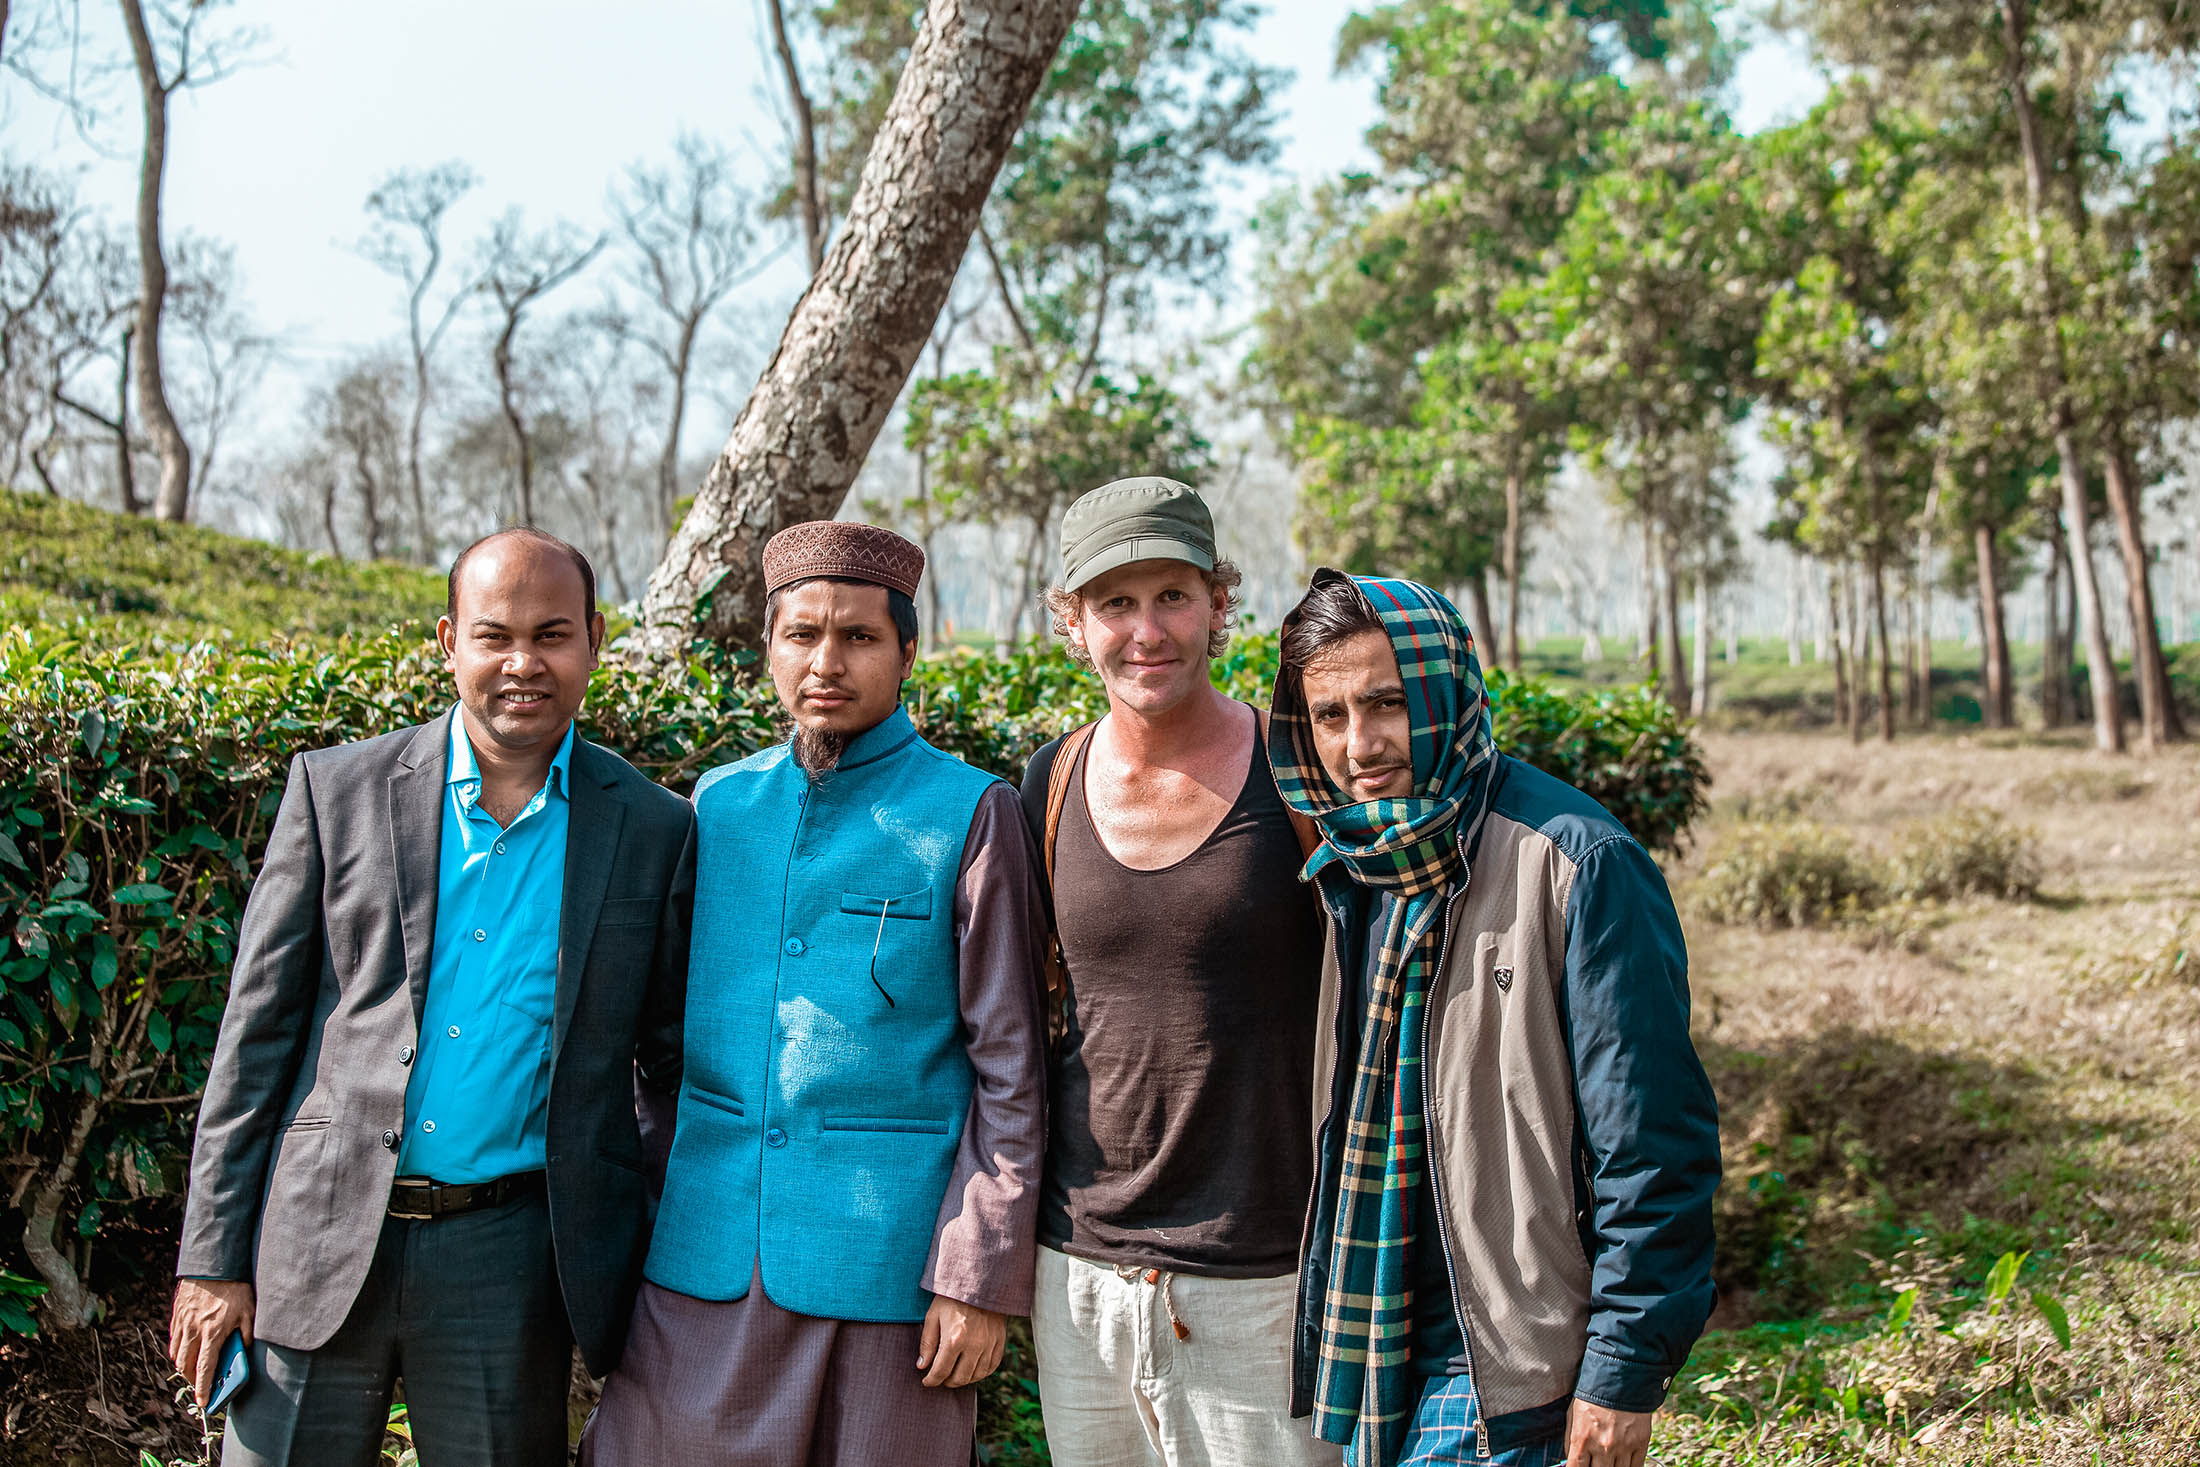 Ben with locals while walking through fields in Sreemangal, Bangaldesh